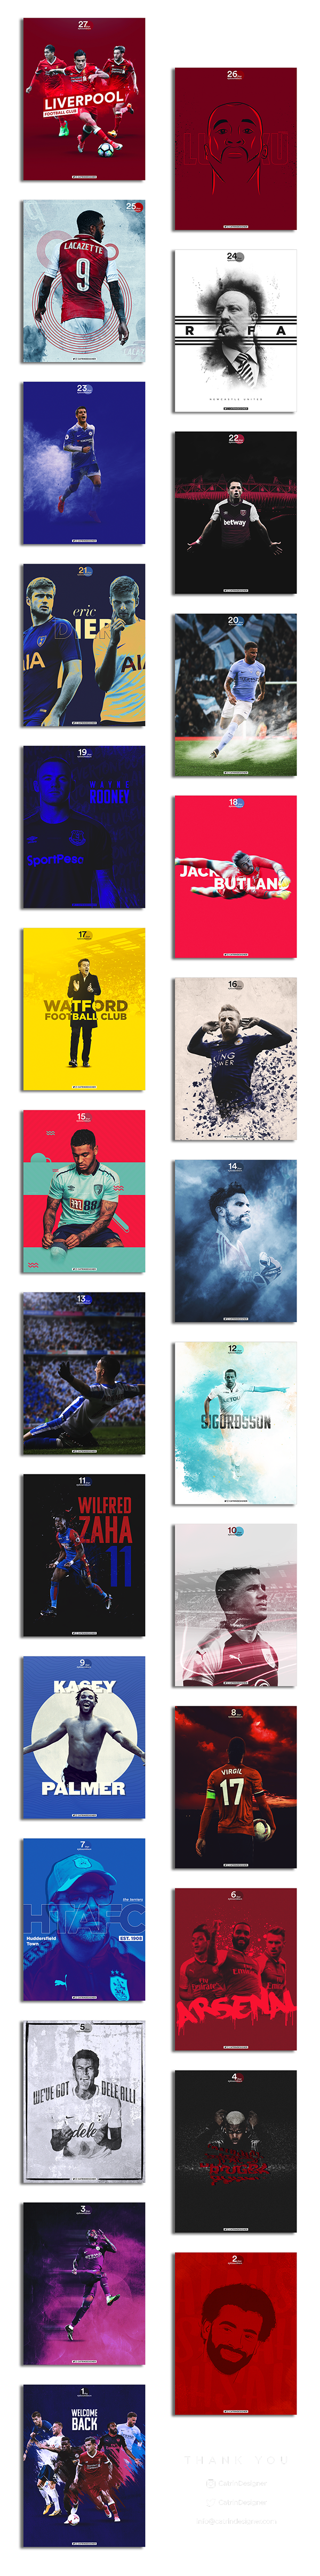 Premier League Countdown | Posters